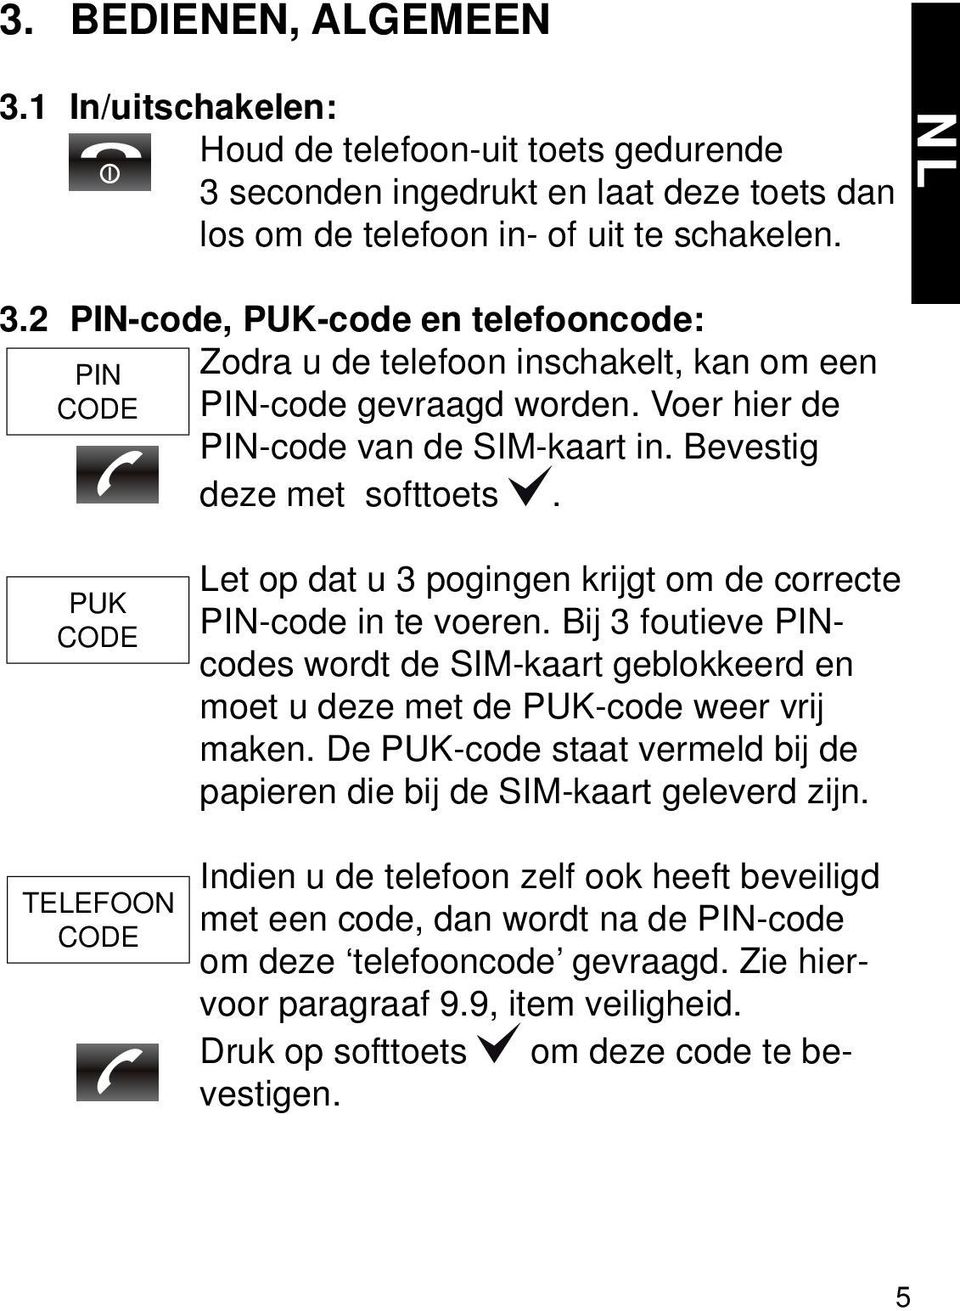 PUK CODE TELEFOON CODE Let op dat u 3 pogingen krijgt om de correcte PIN-code in te voeren. Bij 3 foutieve PINcodes wordt de SIM-kaart geblokkeerd en moet u deze met de PUK-code weer vrij maken.